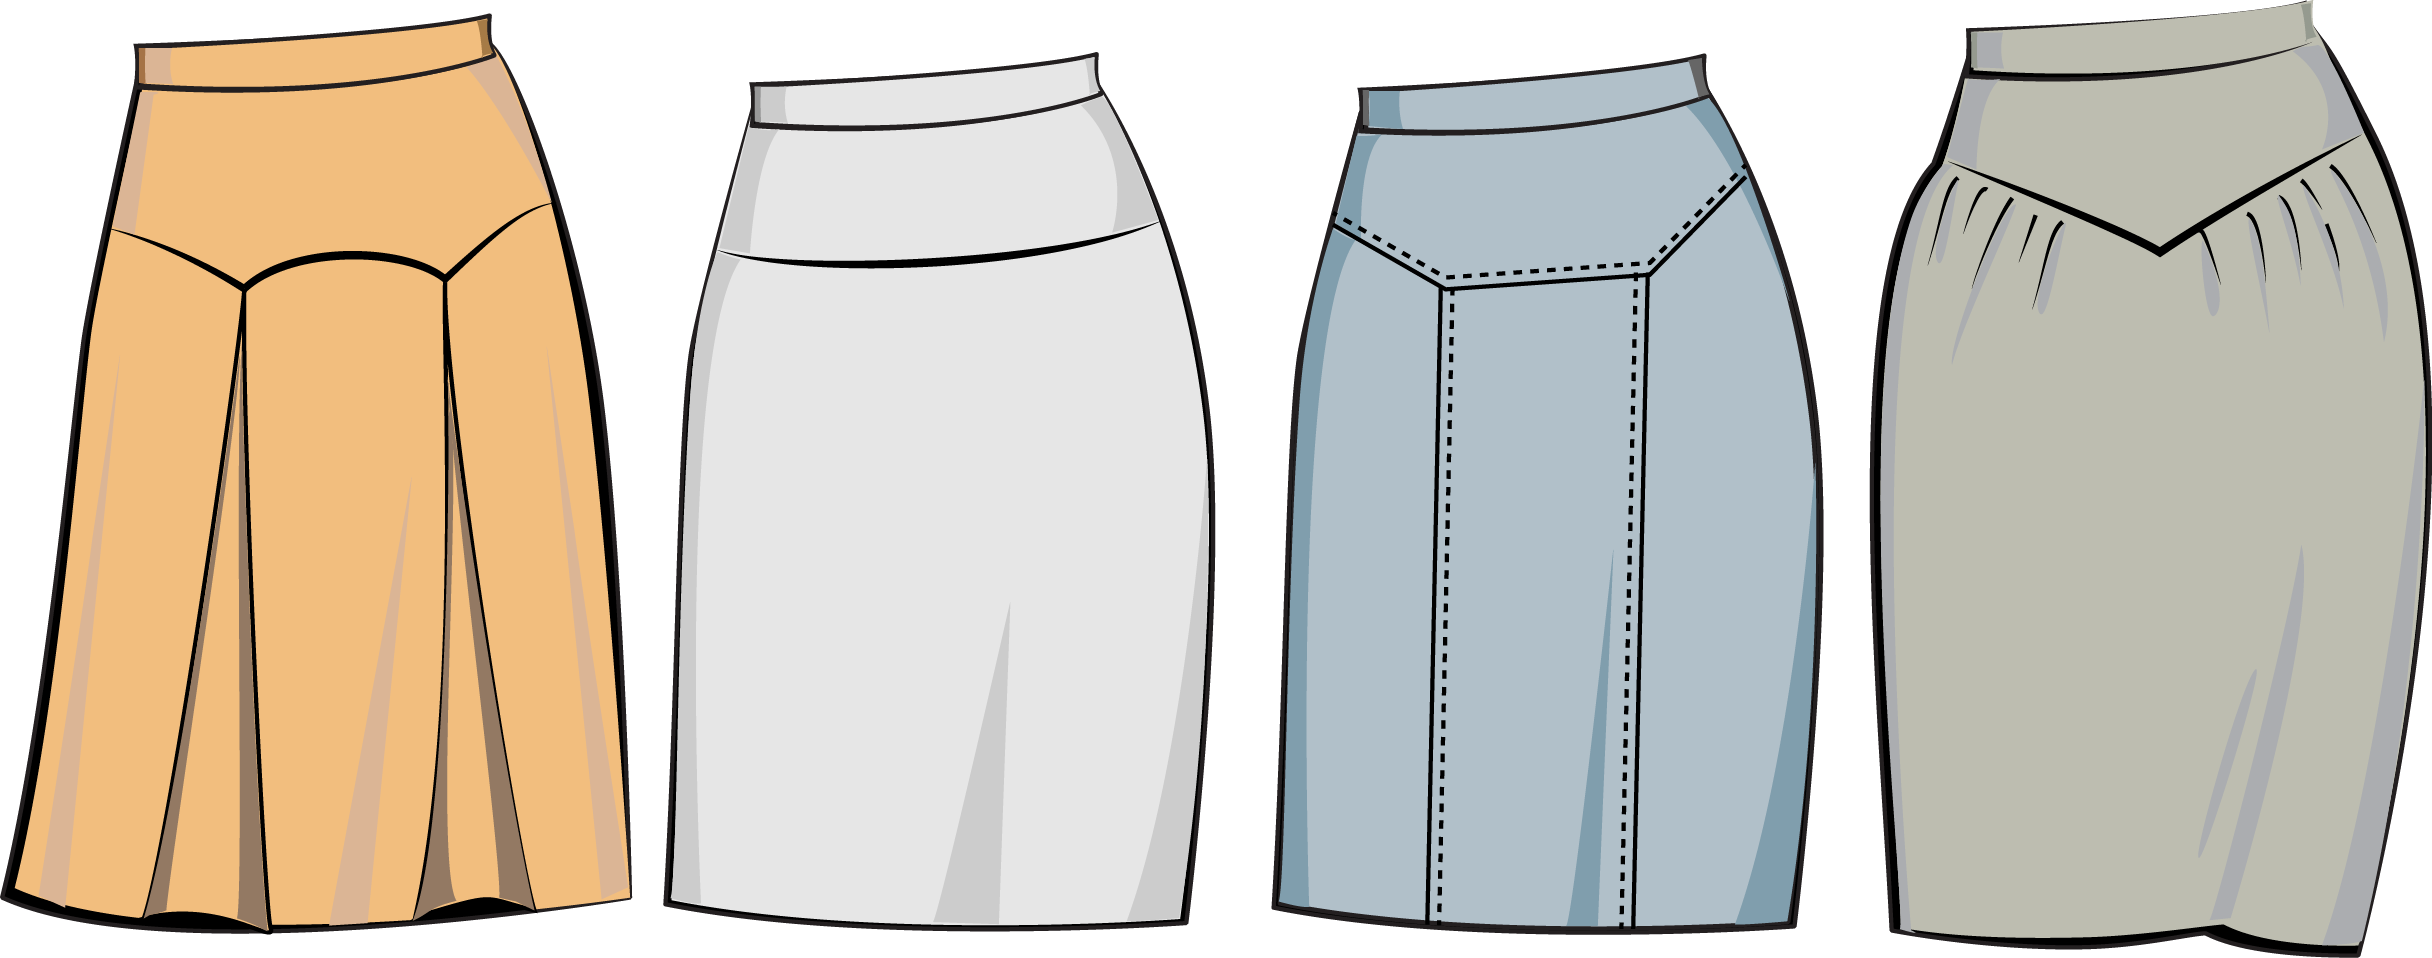 Как сшить юбку на кокетке с карманами и кантом? Часть 1. Моделирование юбки с отстрочкой для Инги.